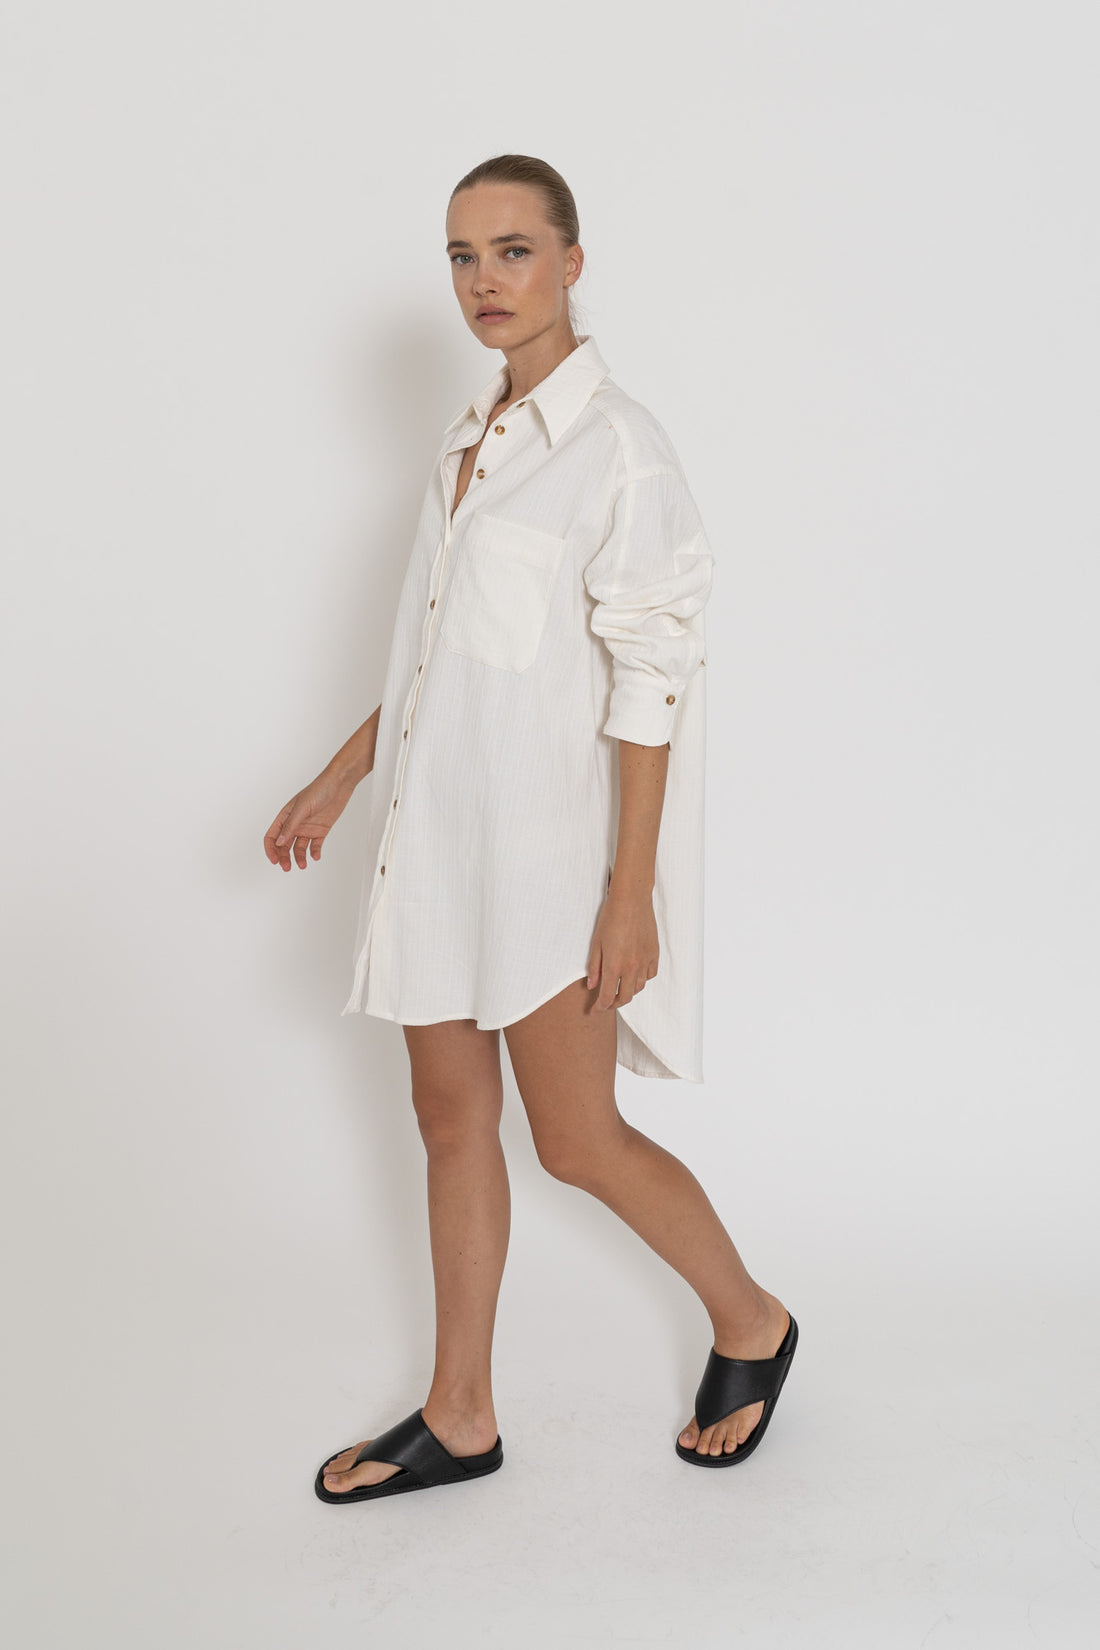 'Capri Shirt Dress'- White Cotton Slub